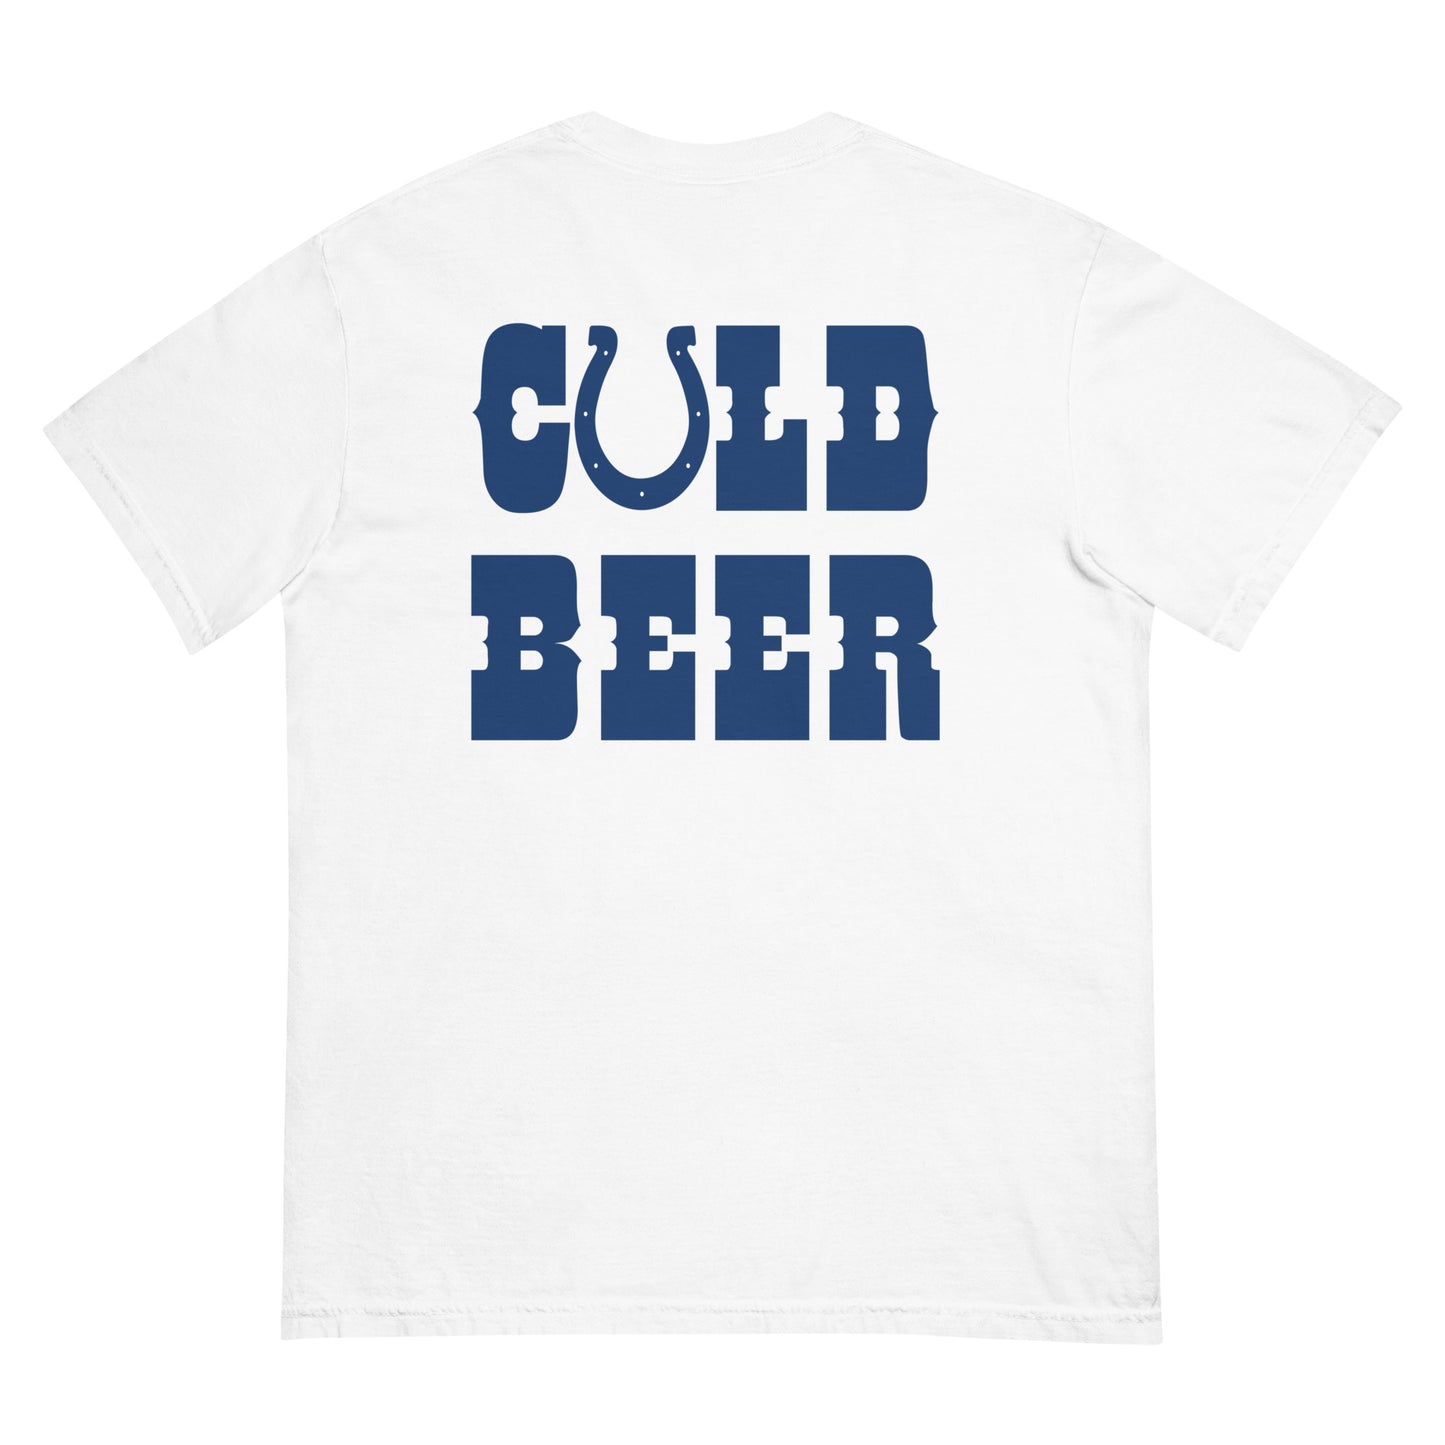 Cold Beer (Front/Back)